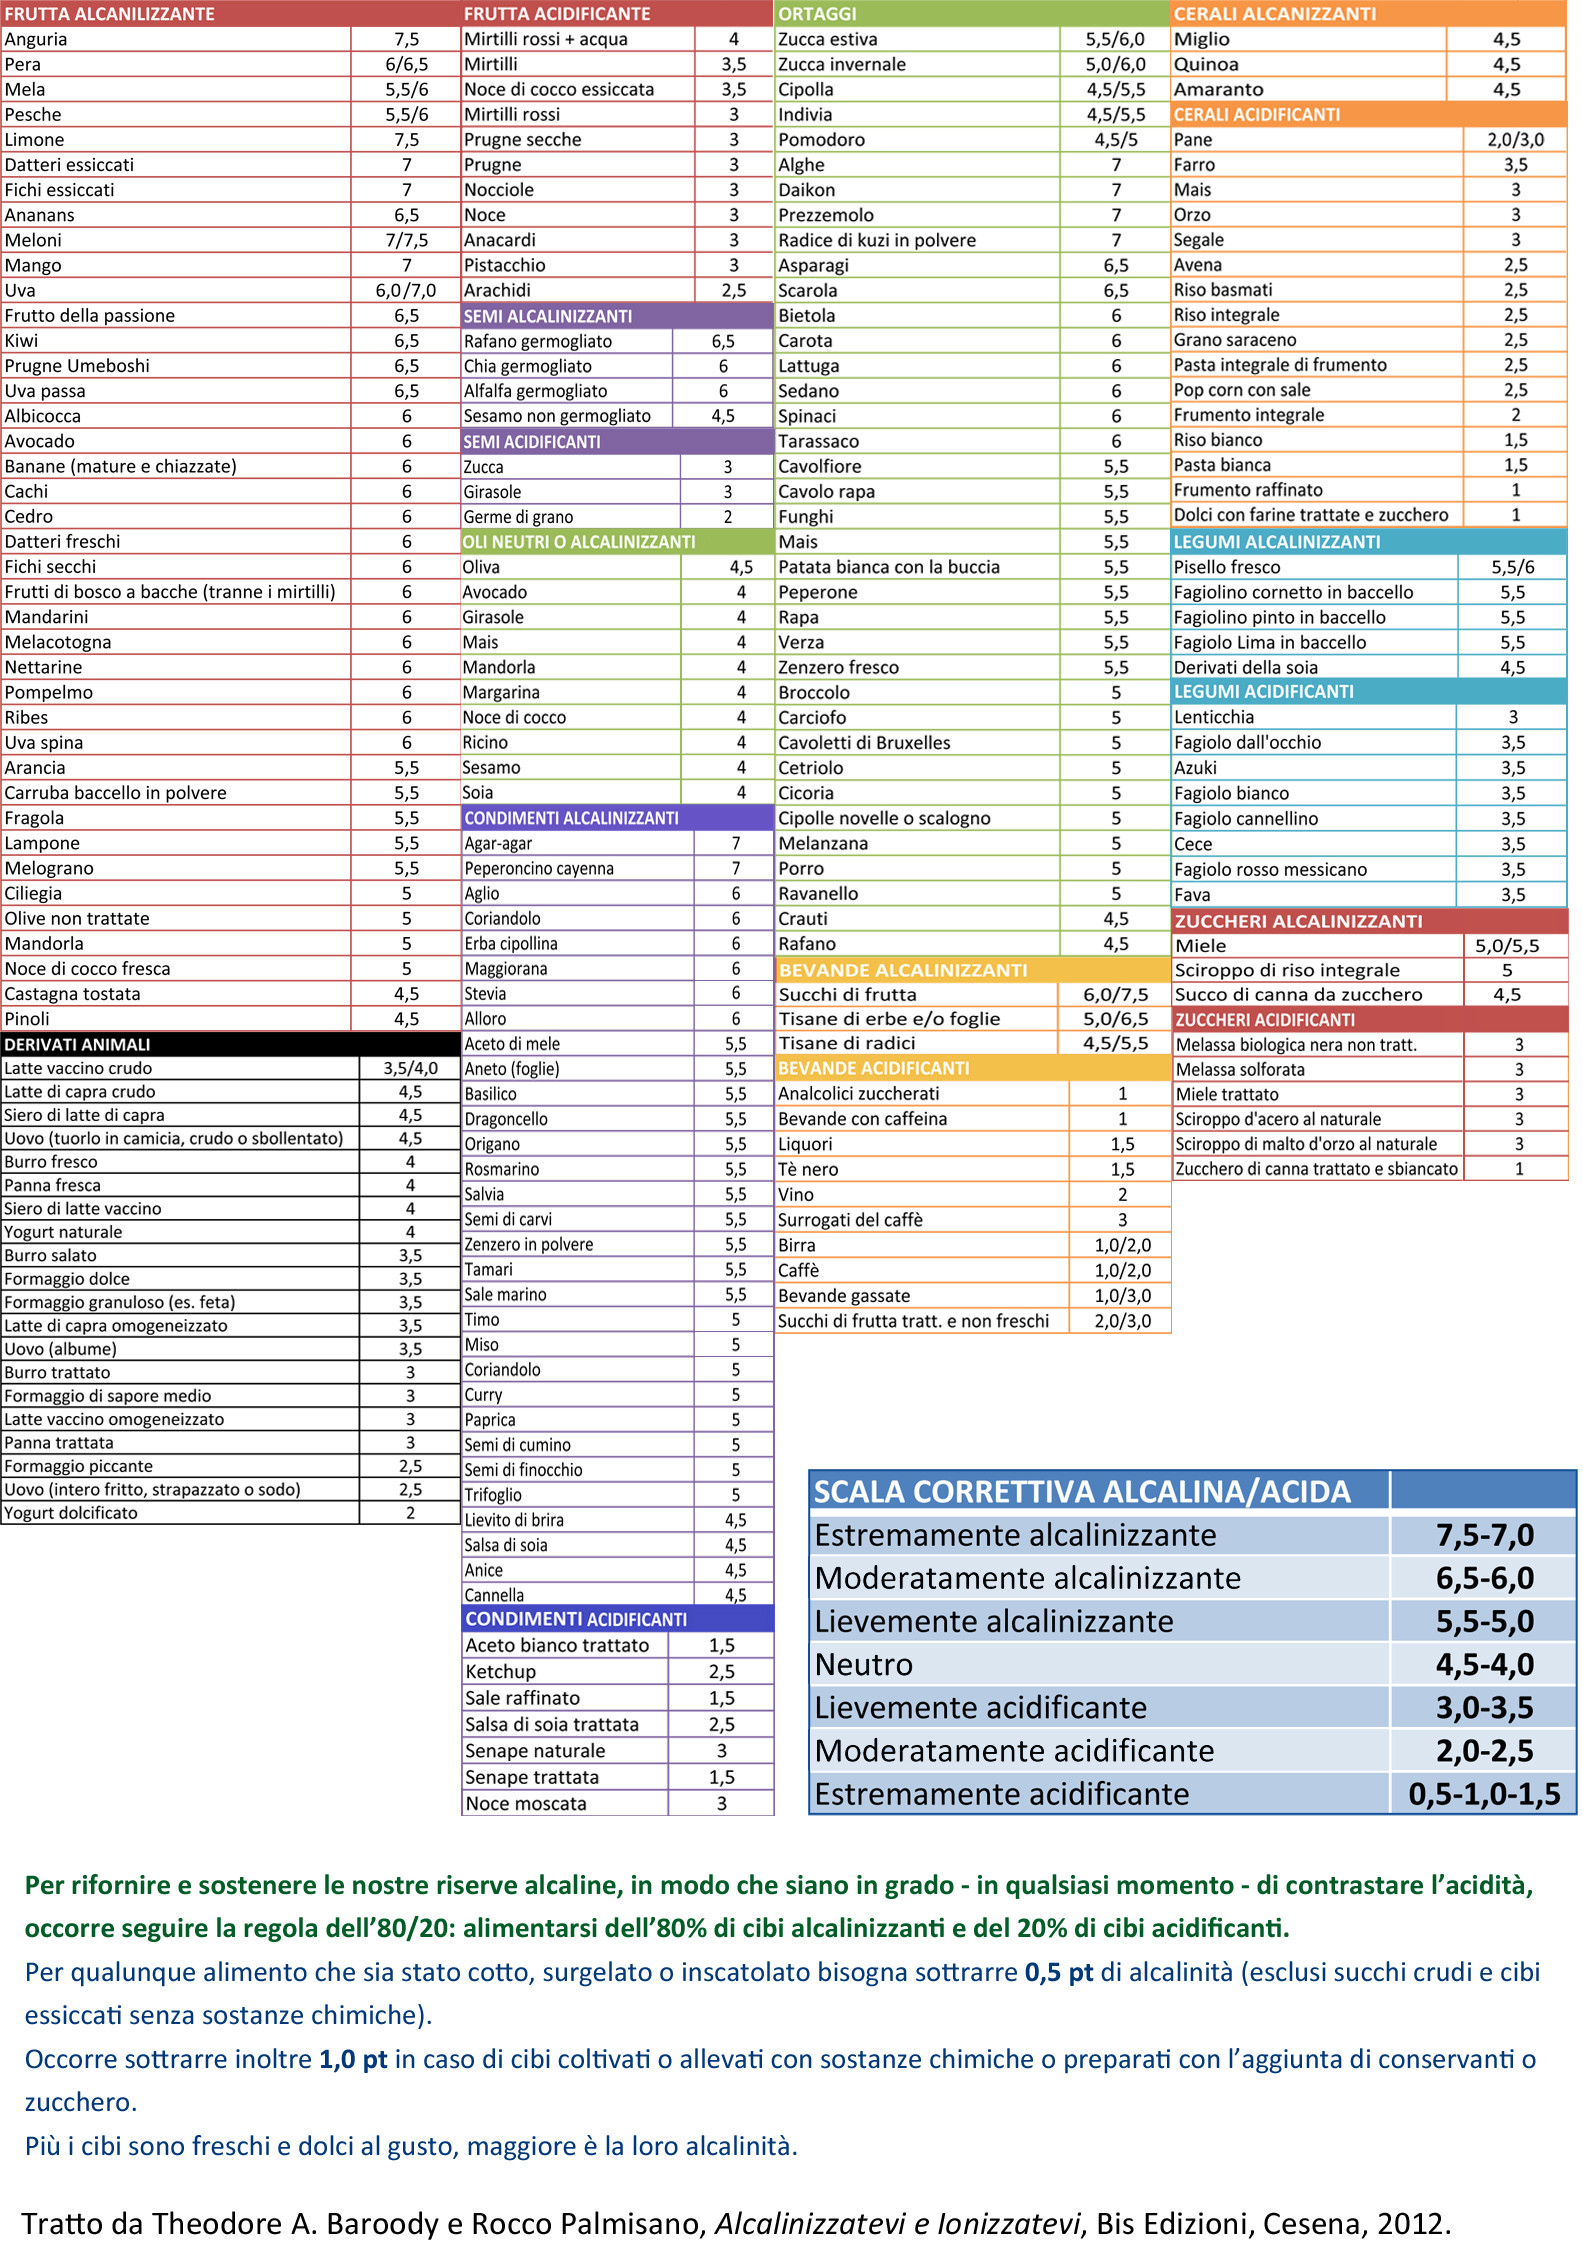 Del Tabelle
 Una tabella dei cibi alcalinizzanti e acidificanti free